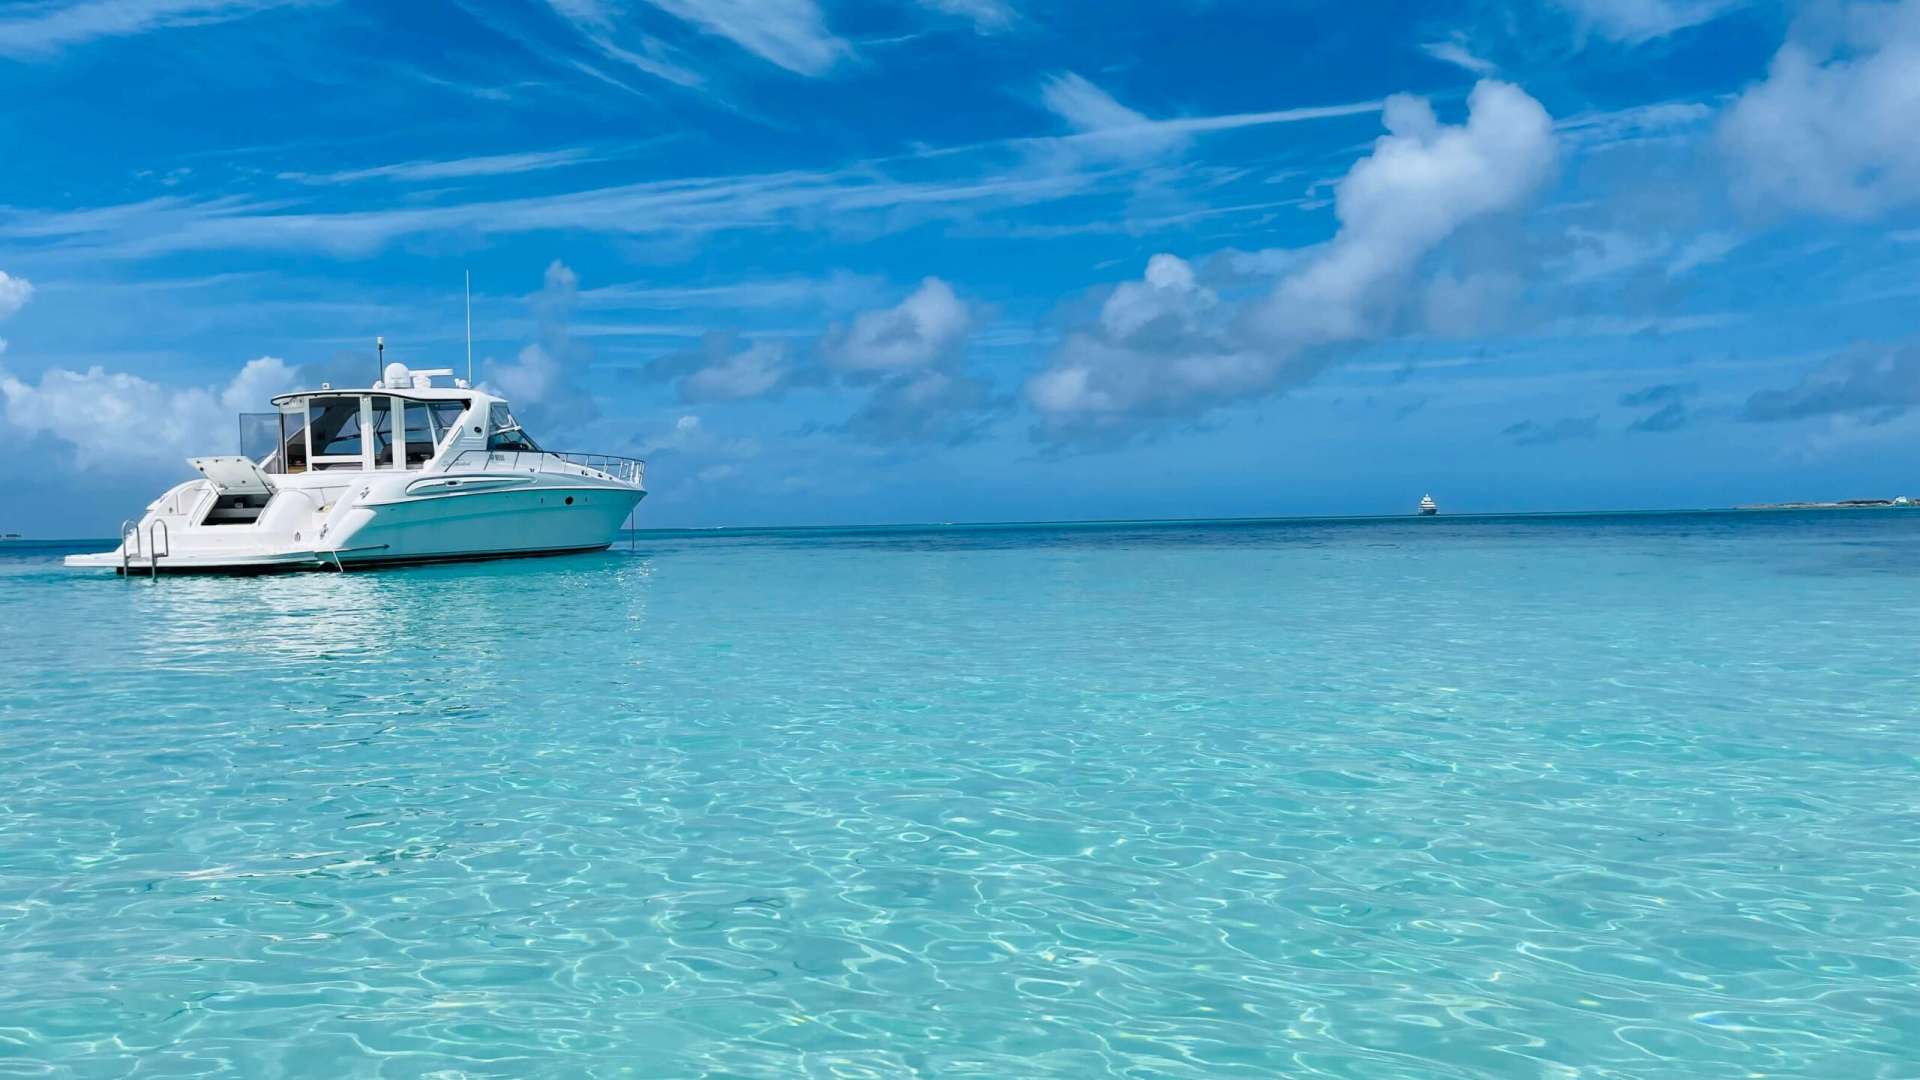 Sea Ray 60 Sundancer - Luxury yacht charter Bahamas & Boat hire in Bahamas New Providence Nassau Palm Cay One Marina 2